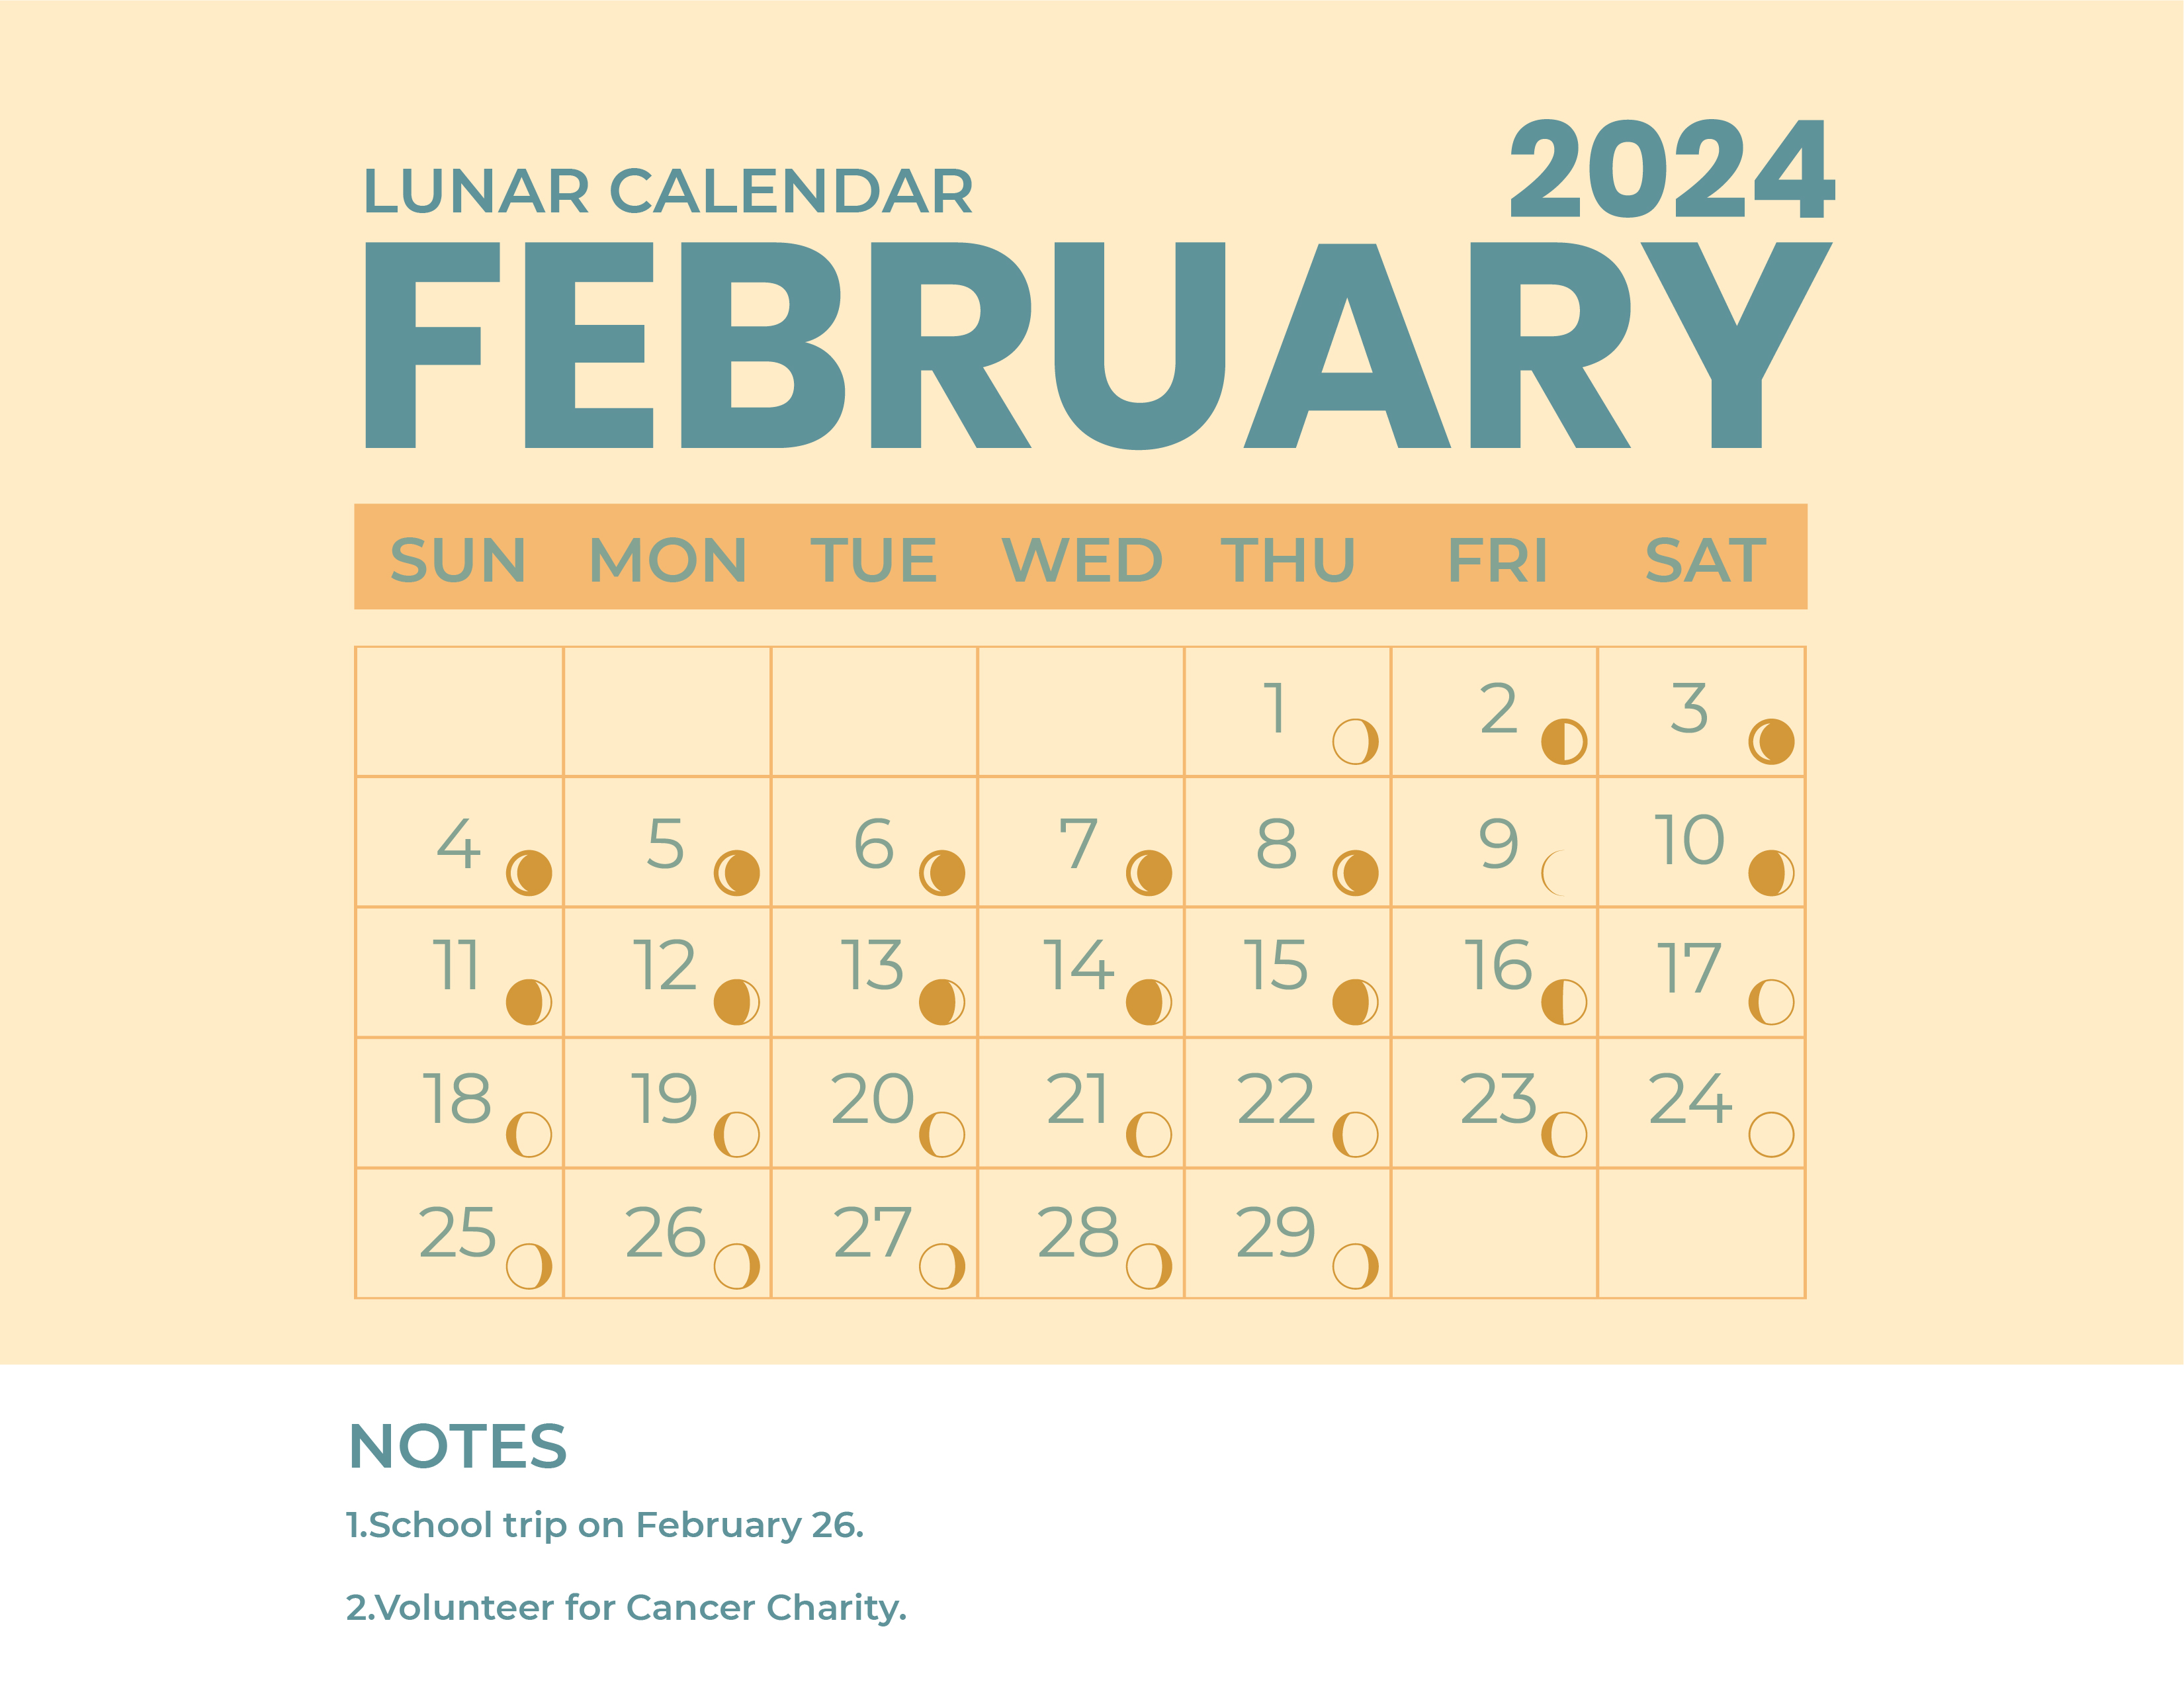 Lunar Calendar April 2024 - Download in Word, Illustrator, EPS, SVG ...